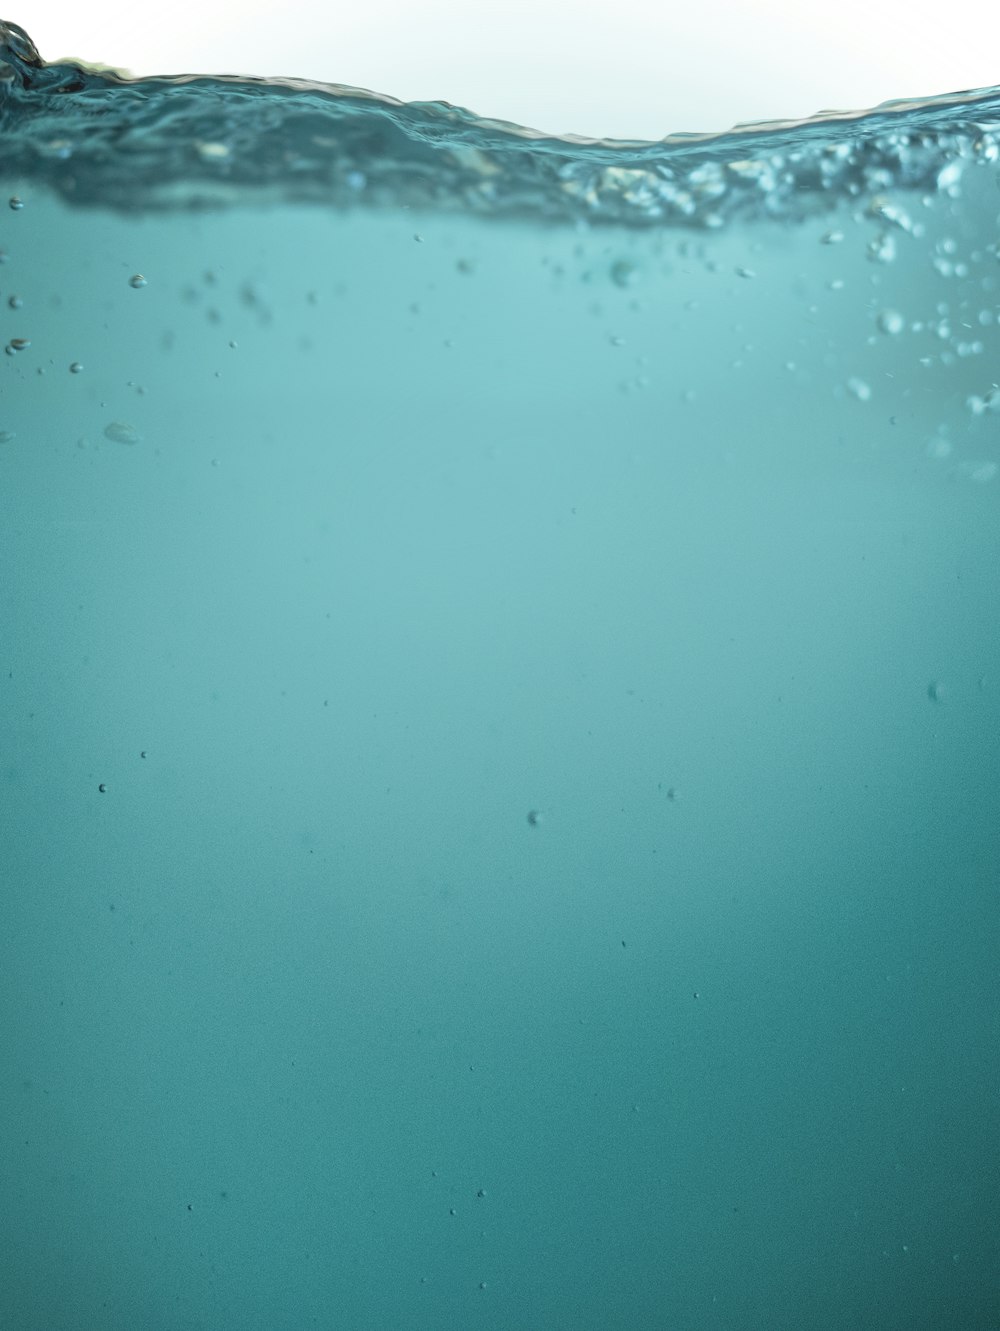 gotículas de água na superfície azul